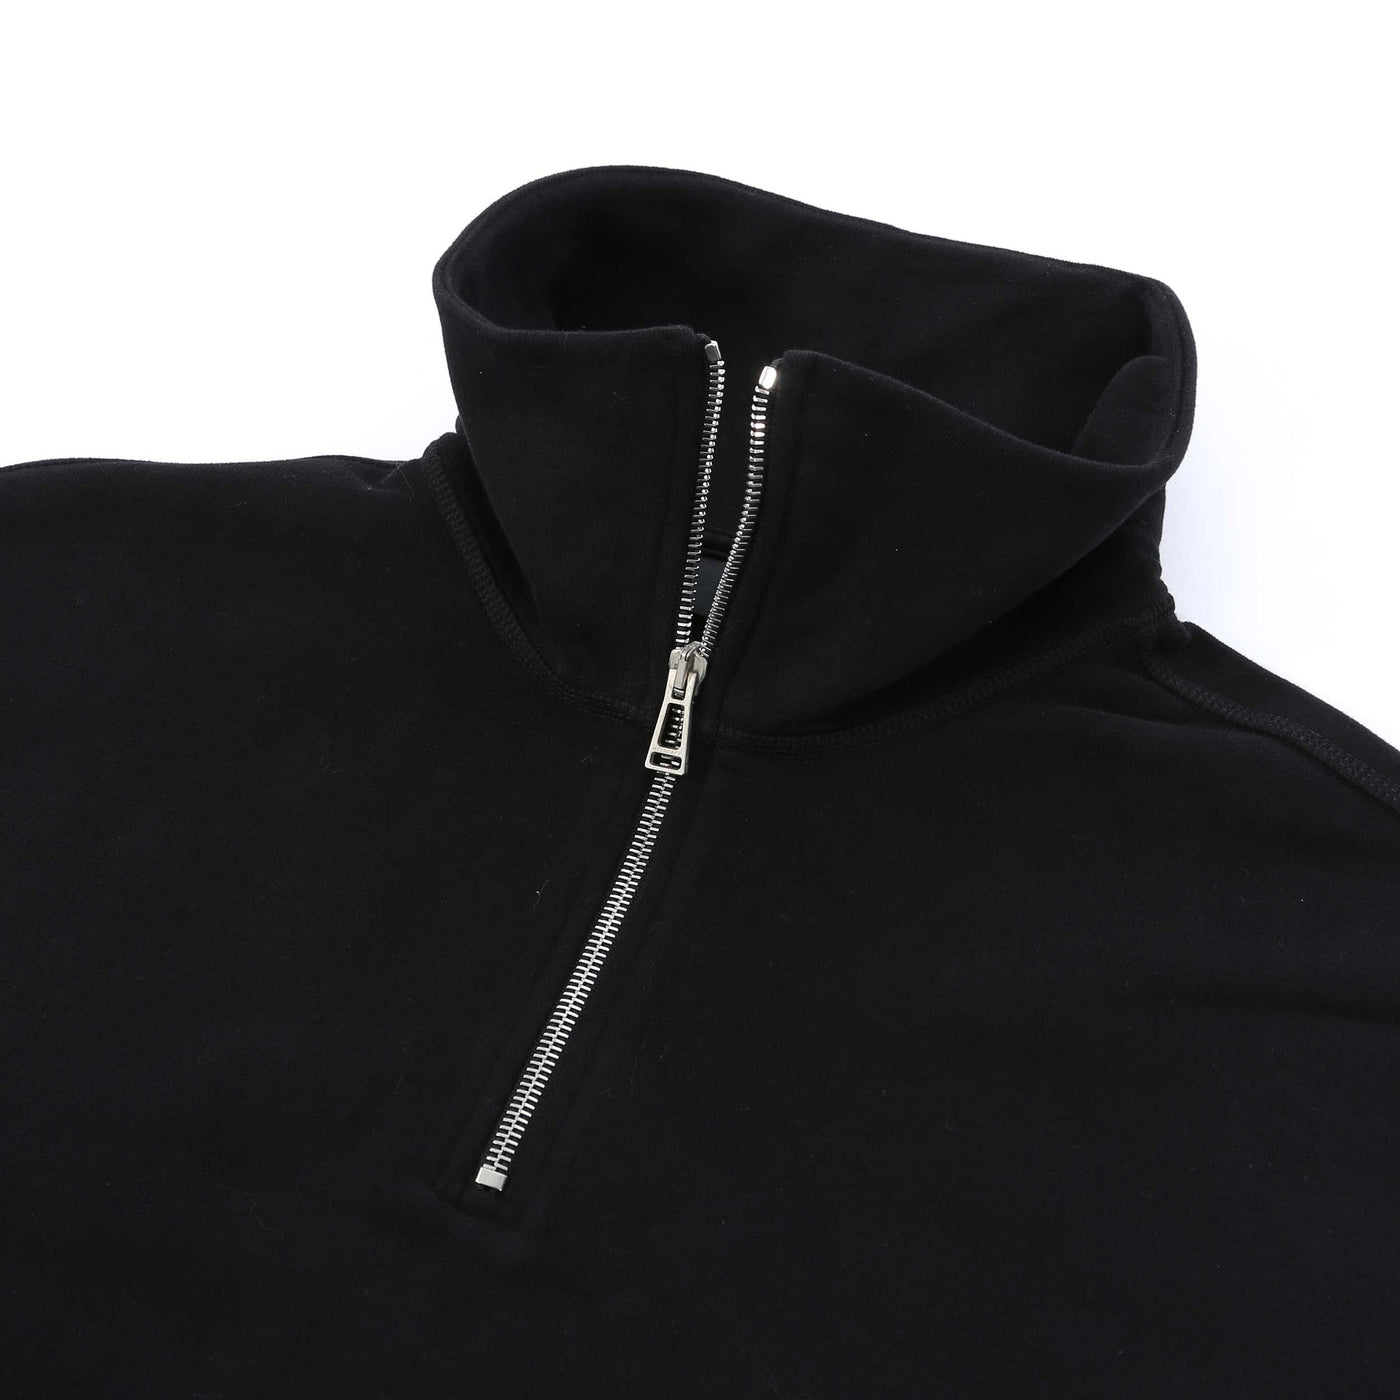 Belstaff Signature Quarter Zip Ladies Sweatshirt in Black Zip